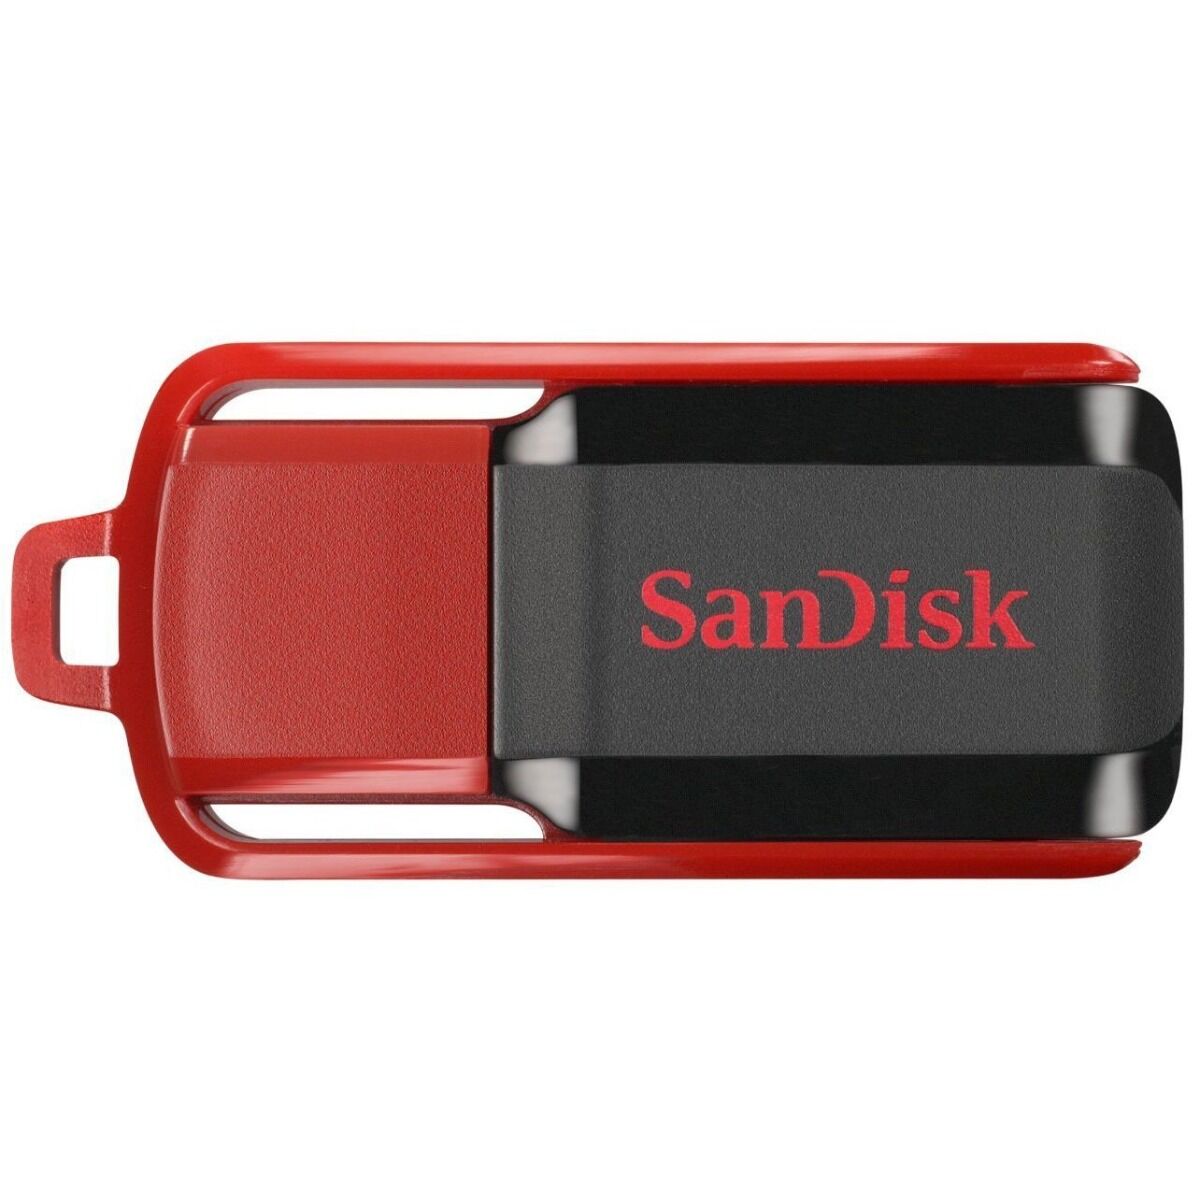 Memorie USB SanDisk Cruzer Switch 32GB, USB 2.0, Negru/Rosu